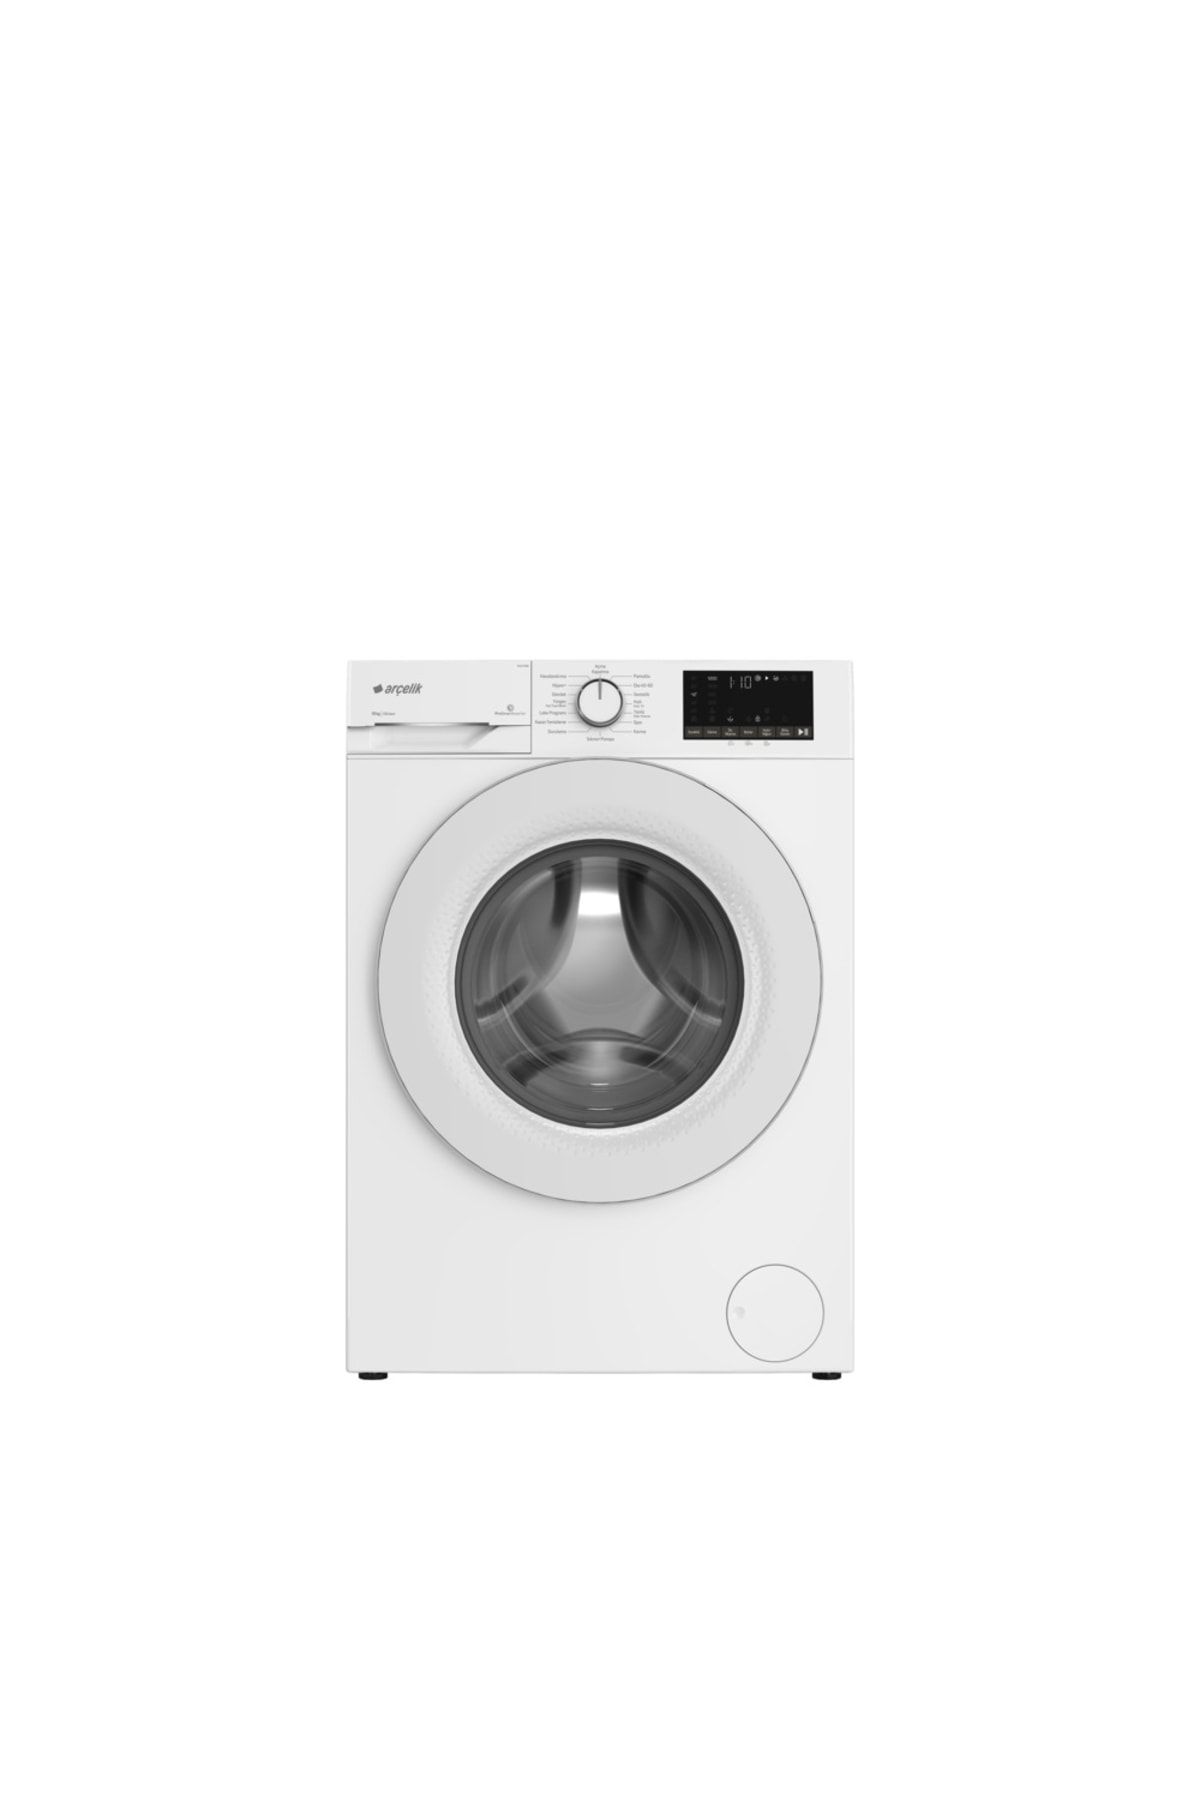 Arçelik 10121 Pmb 10 Kg 1200 Devir Beyaz Çamaşır Makinesi